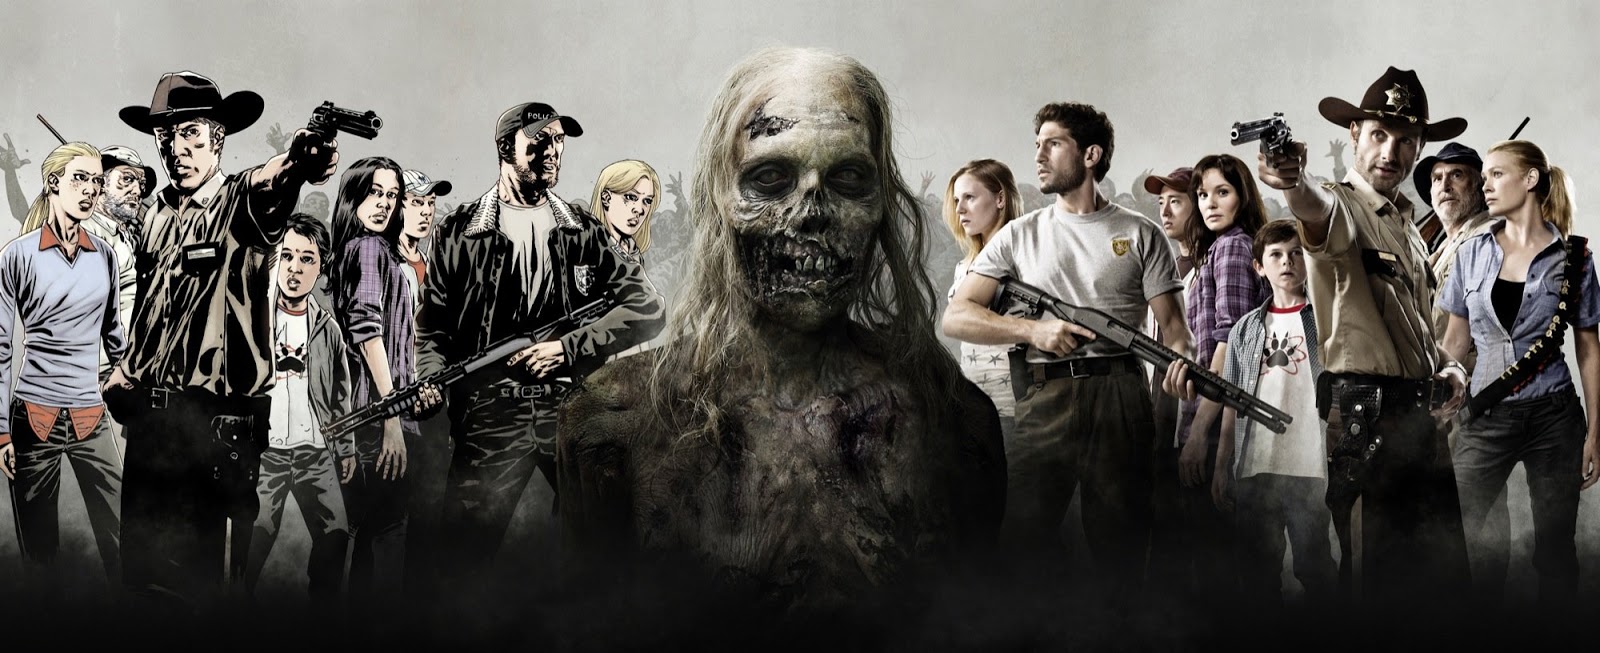 Filmy i seriale.: 3. The Walking Dead (Żywe Trupy)